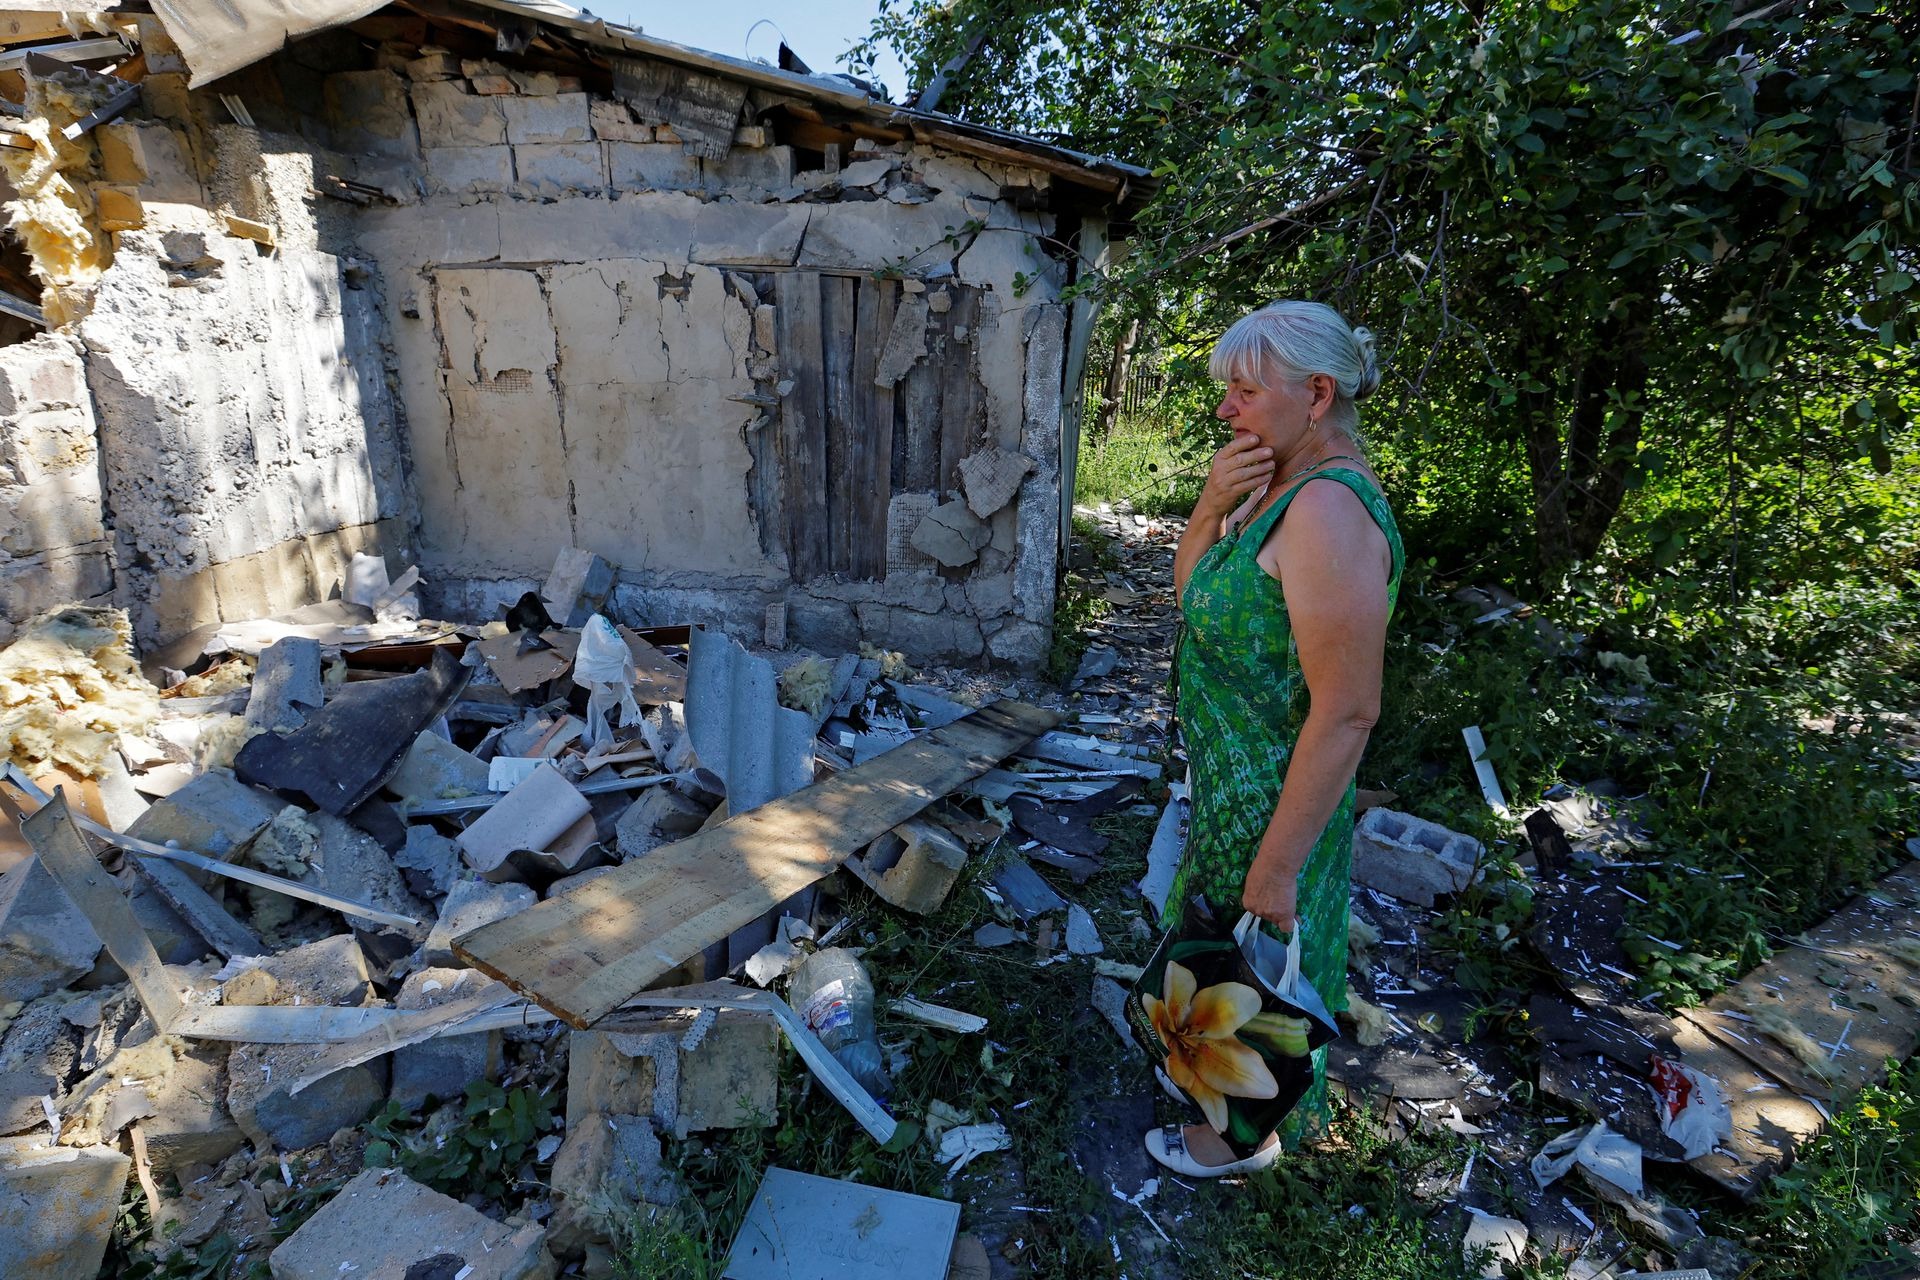 Ảnh thế giới 7 ngày qua: Đạn pháo nổ liên tục ở Ukraine và cảnh đổ nát chưa từng thấy ở đất nước này - Ảnh 6.